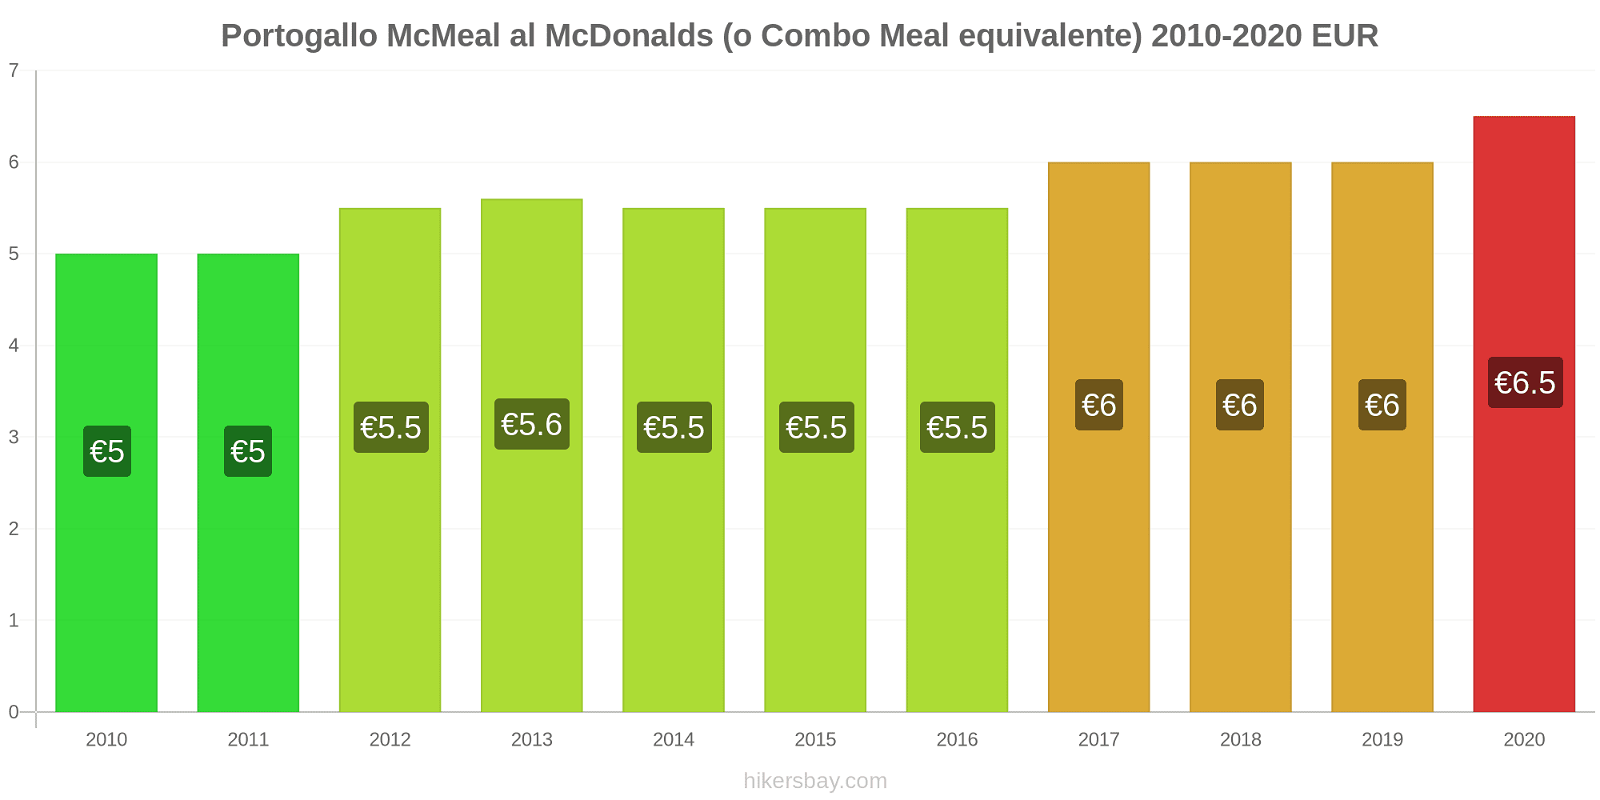 Portogallo variazioni di prezzo McMeal al McDonalds (o in un equivalente fastfood) hikersbay.com